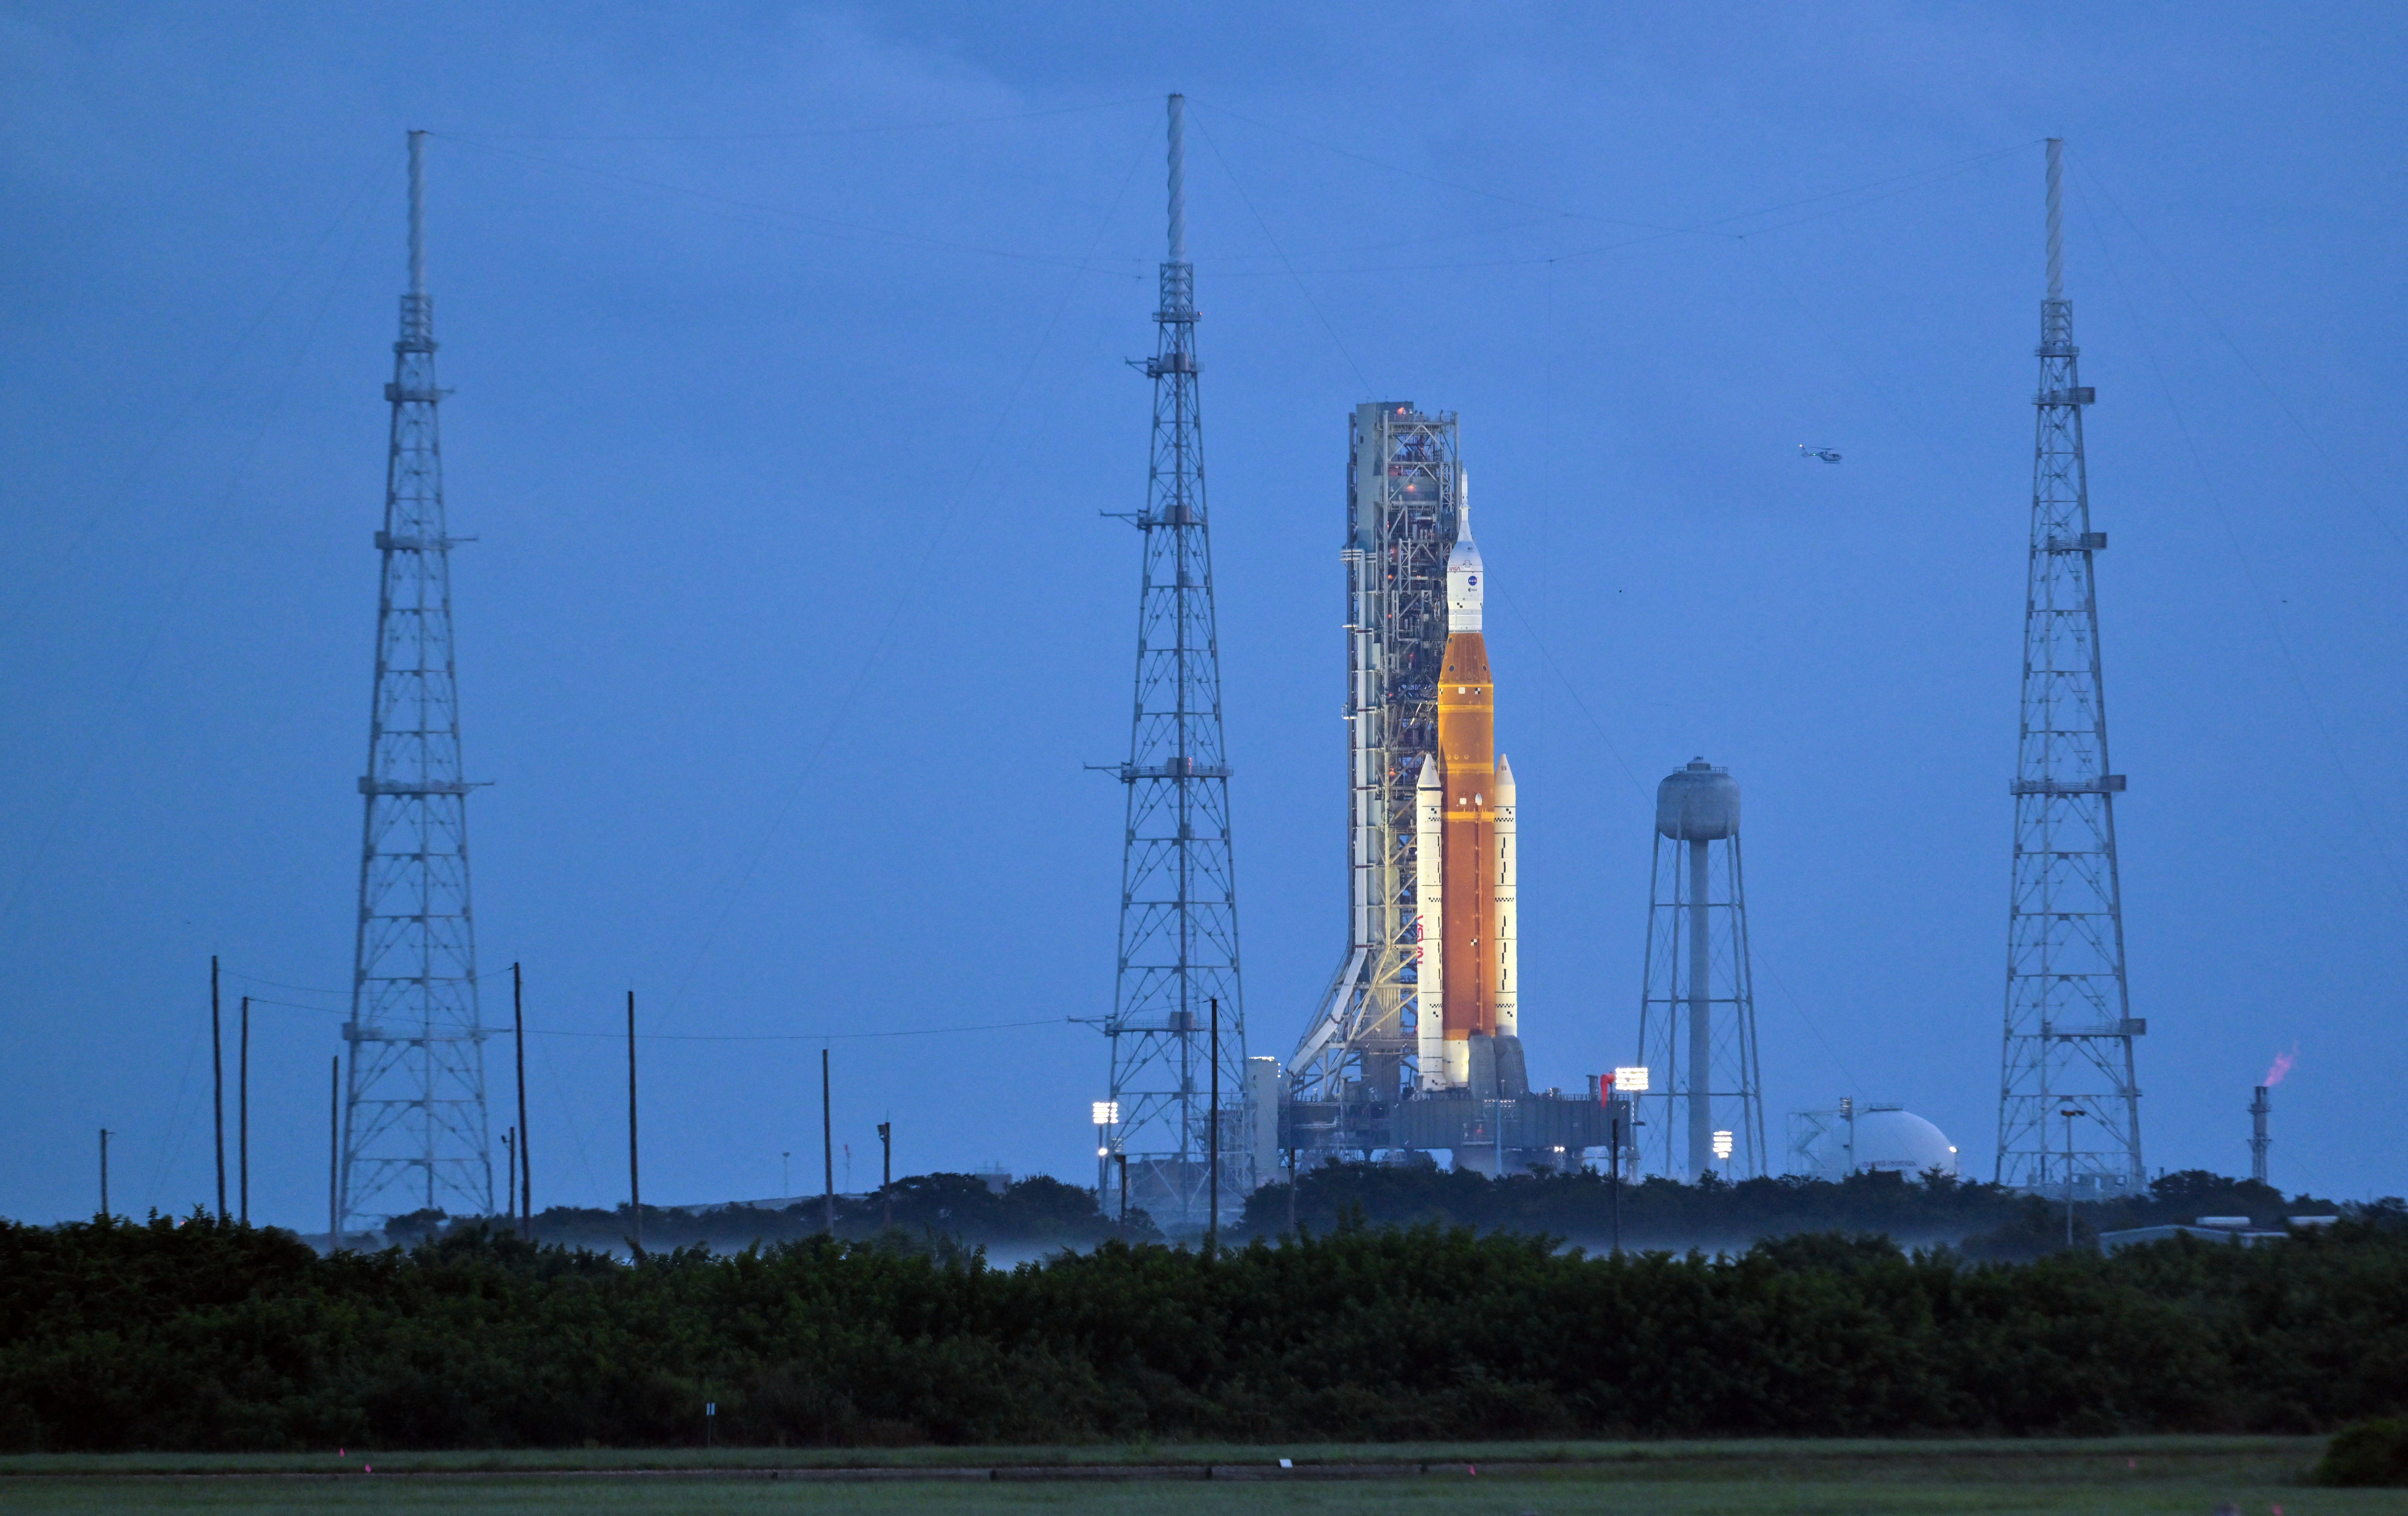 El cohete lunar de próxima generación de la NASA, el Sistema de Lanzamiento Espacial (SLS) con la cápsula de la tripulación Orión encaramada en la parte superior, se encuentra en el complejo de lanzamiento 39B mientras se prepara para el lanzamiento de la misión Artemis 1 en Cabo Cañaveral, Florida, Estados Unidos, el 3 de septiembre de 2022.  REUTERS/Steve Nesius